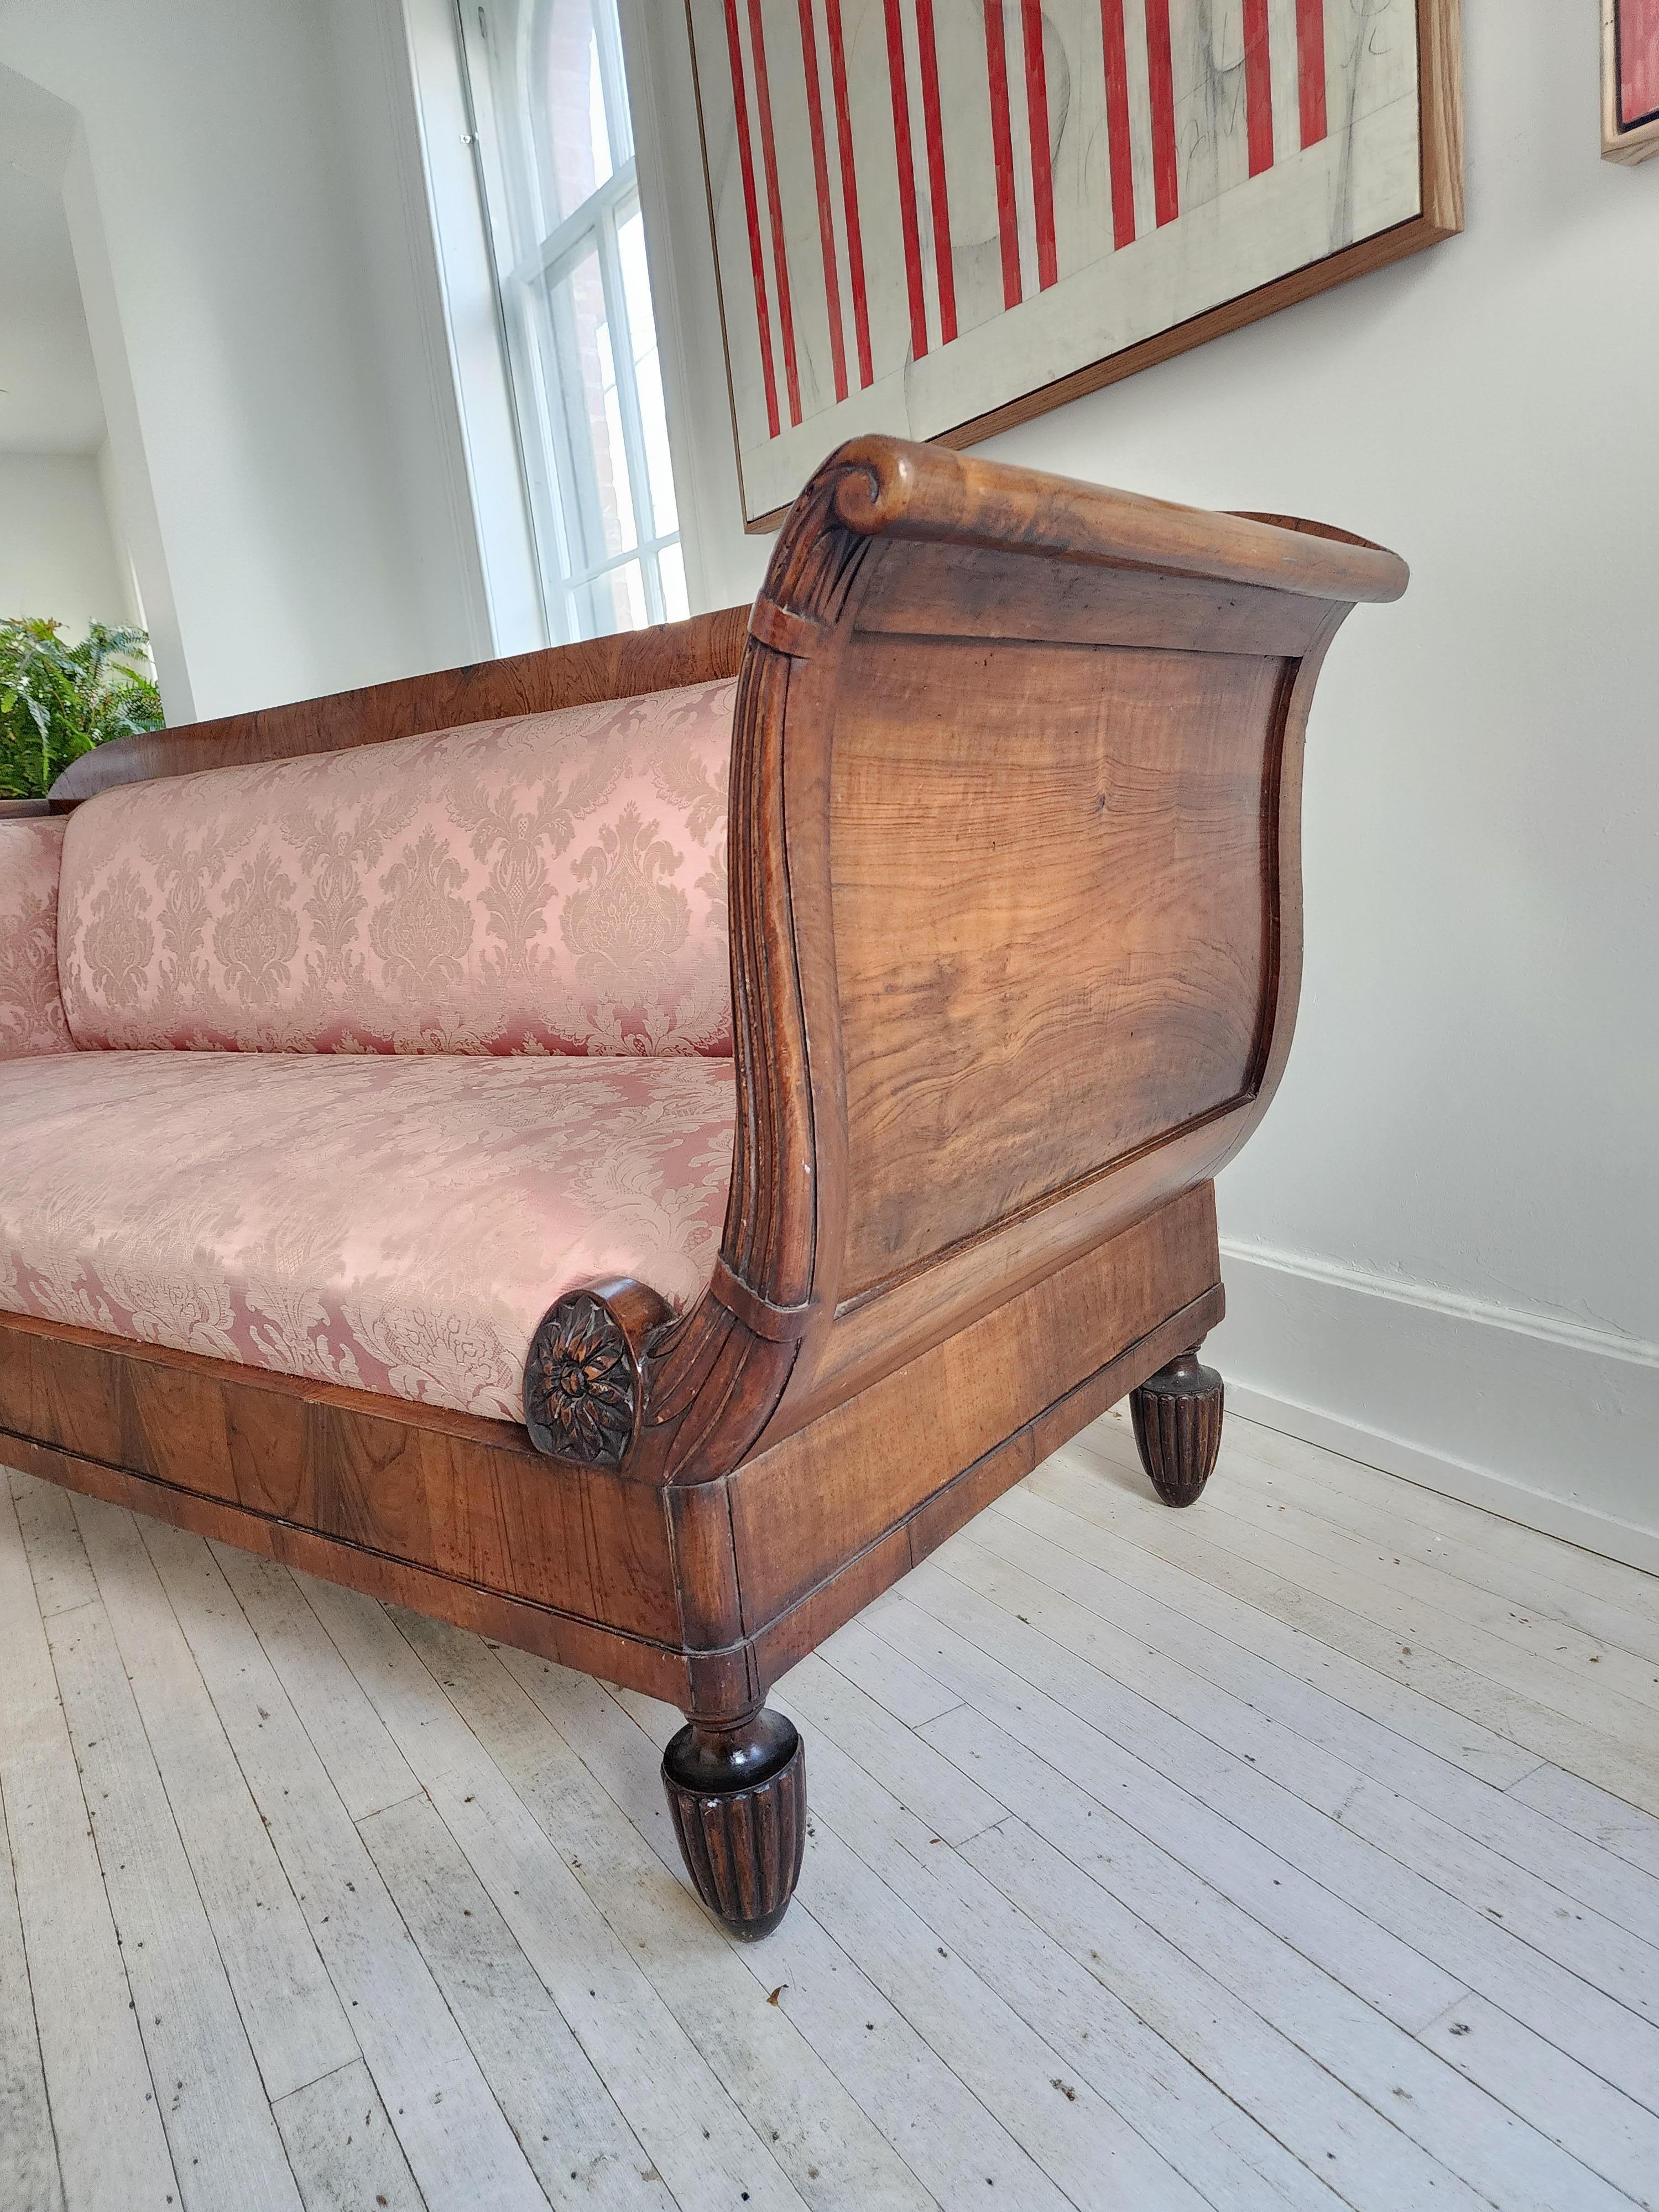 Un design magnifique, plein de grâce et de présence. Ce grand canapé, fabriqué en Italie dans la première moitié du XIXe siècle, est une pièce rare. 
Les magnifiques sculptures sur les faces avant des accoudoirs et la façon dont ils se courbent